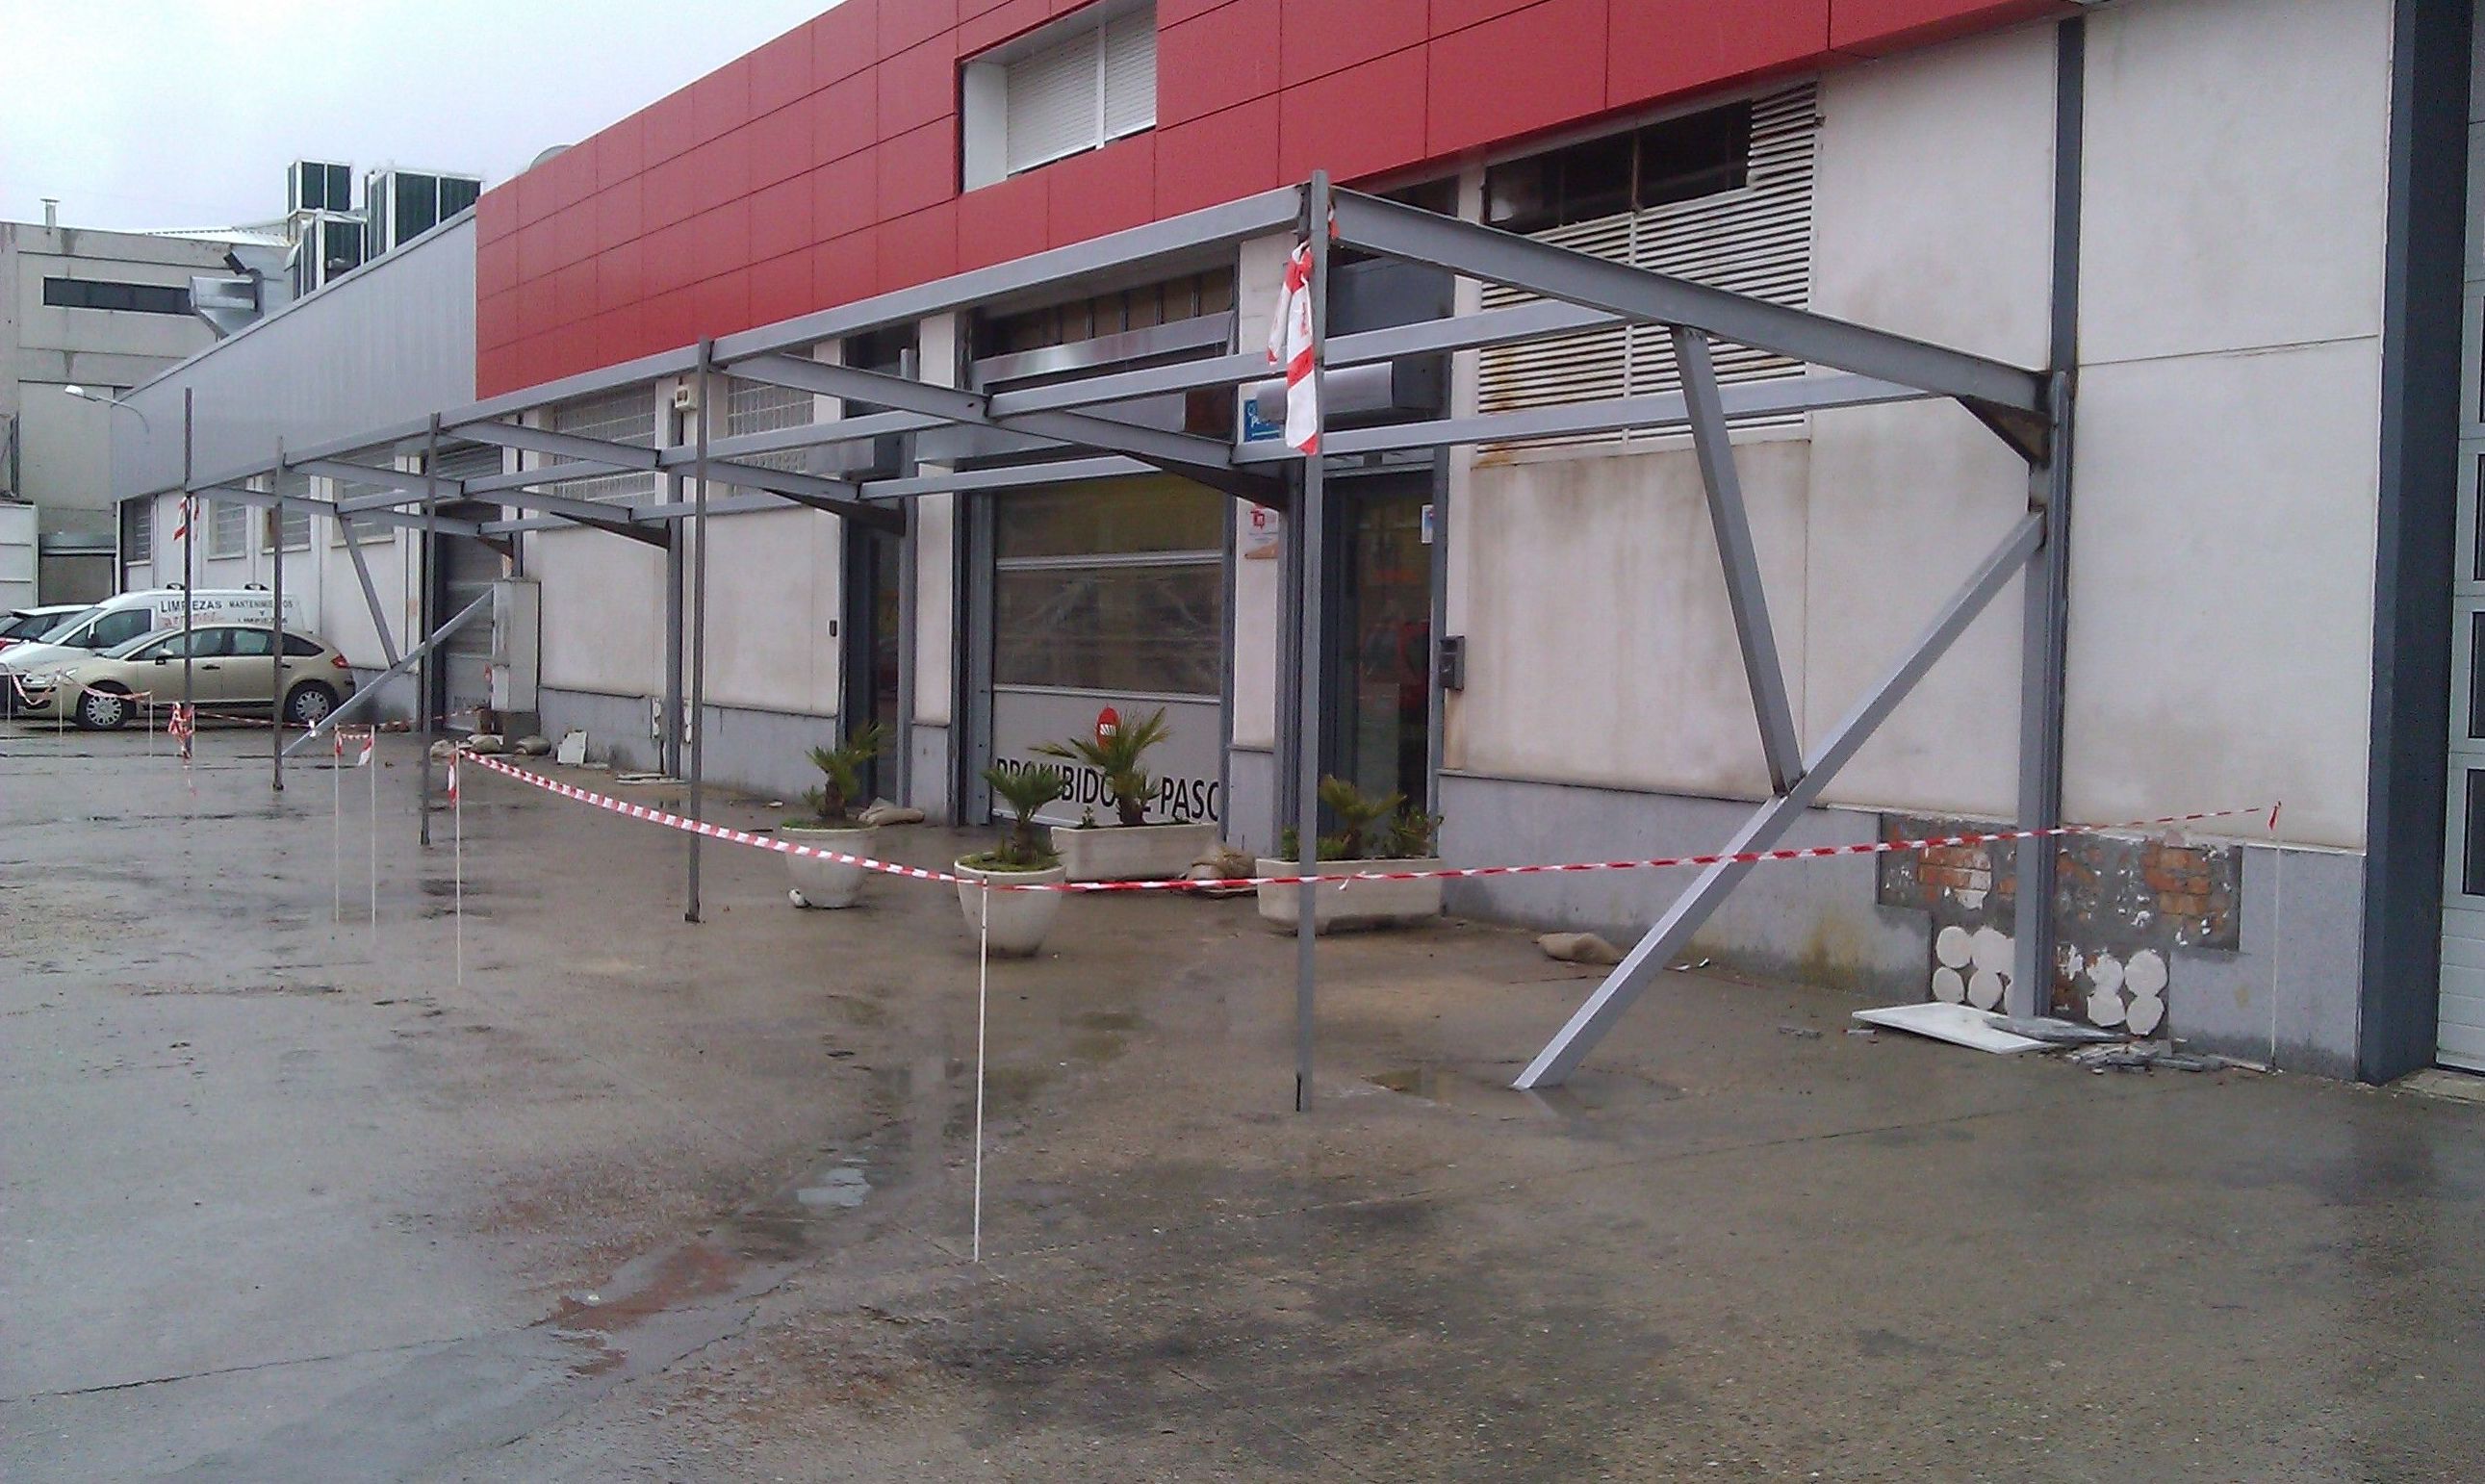 Estructura metálica de aparcamiento con techo de vidrio.